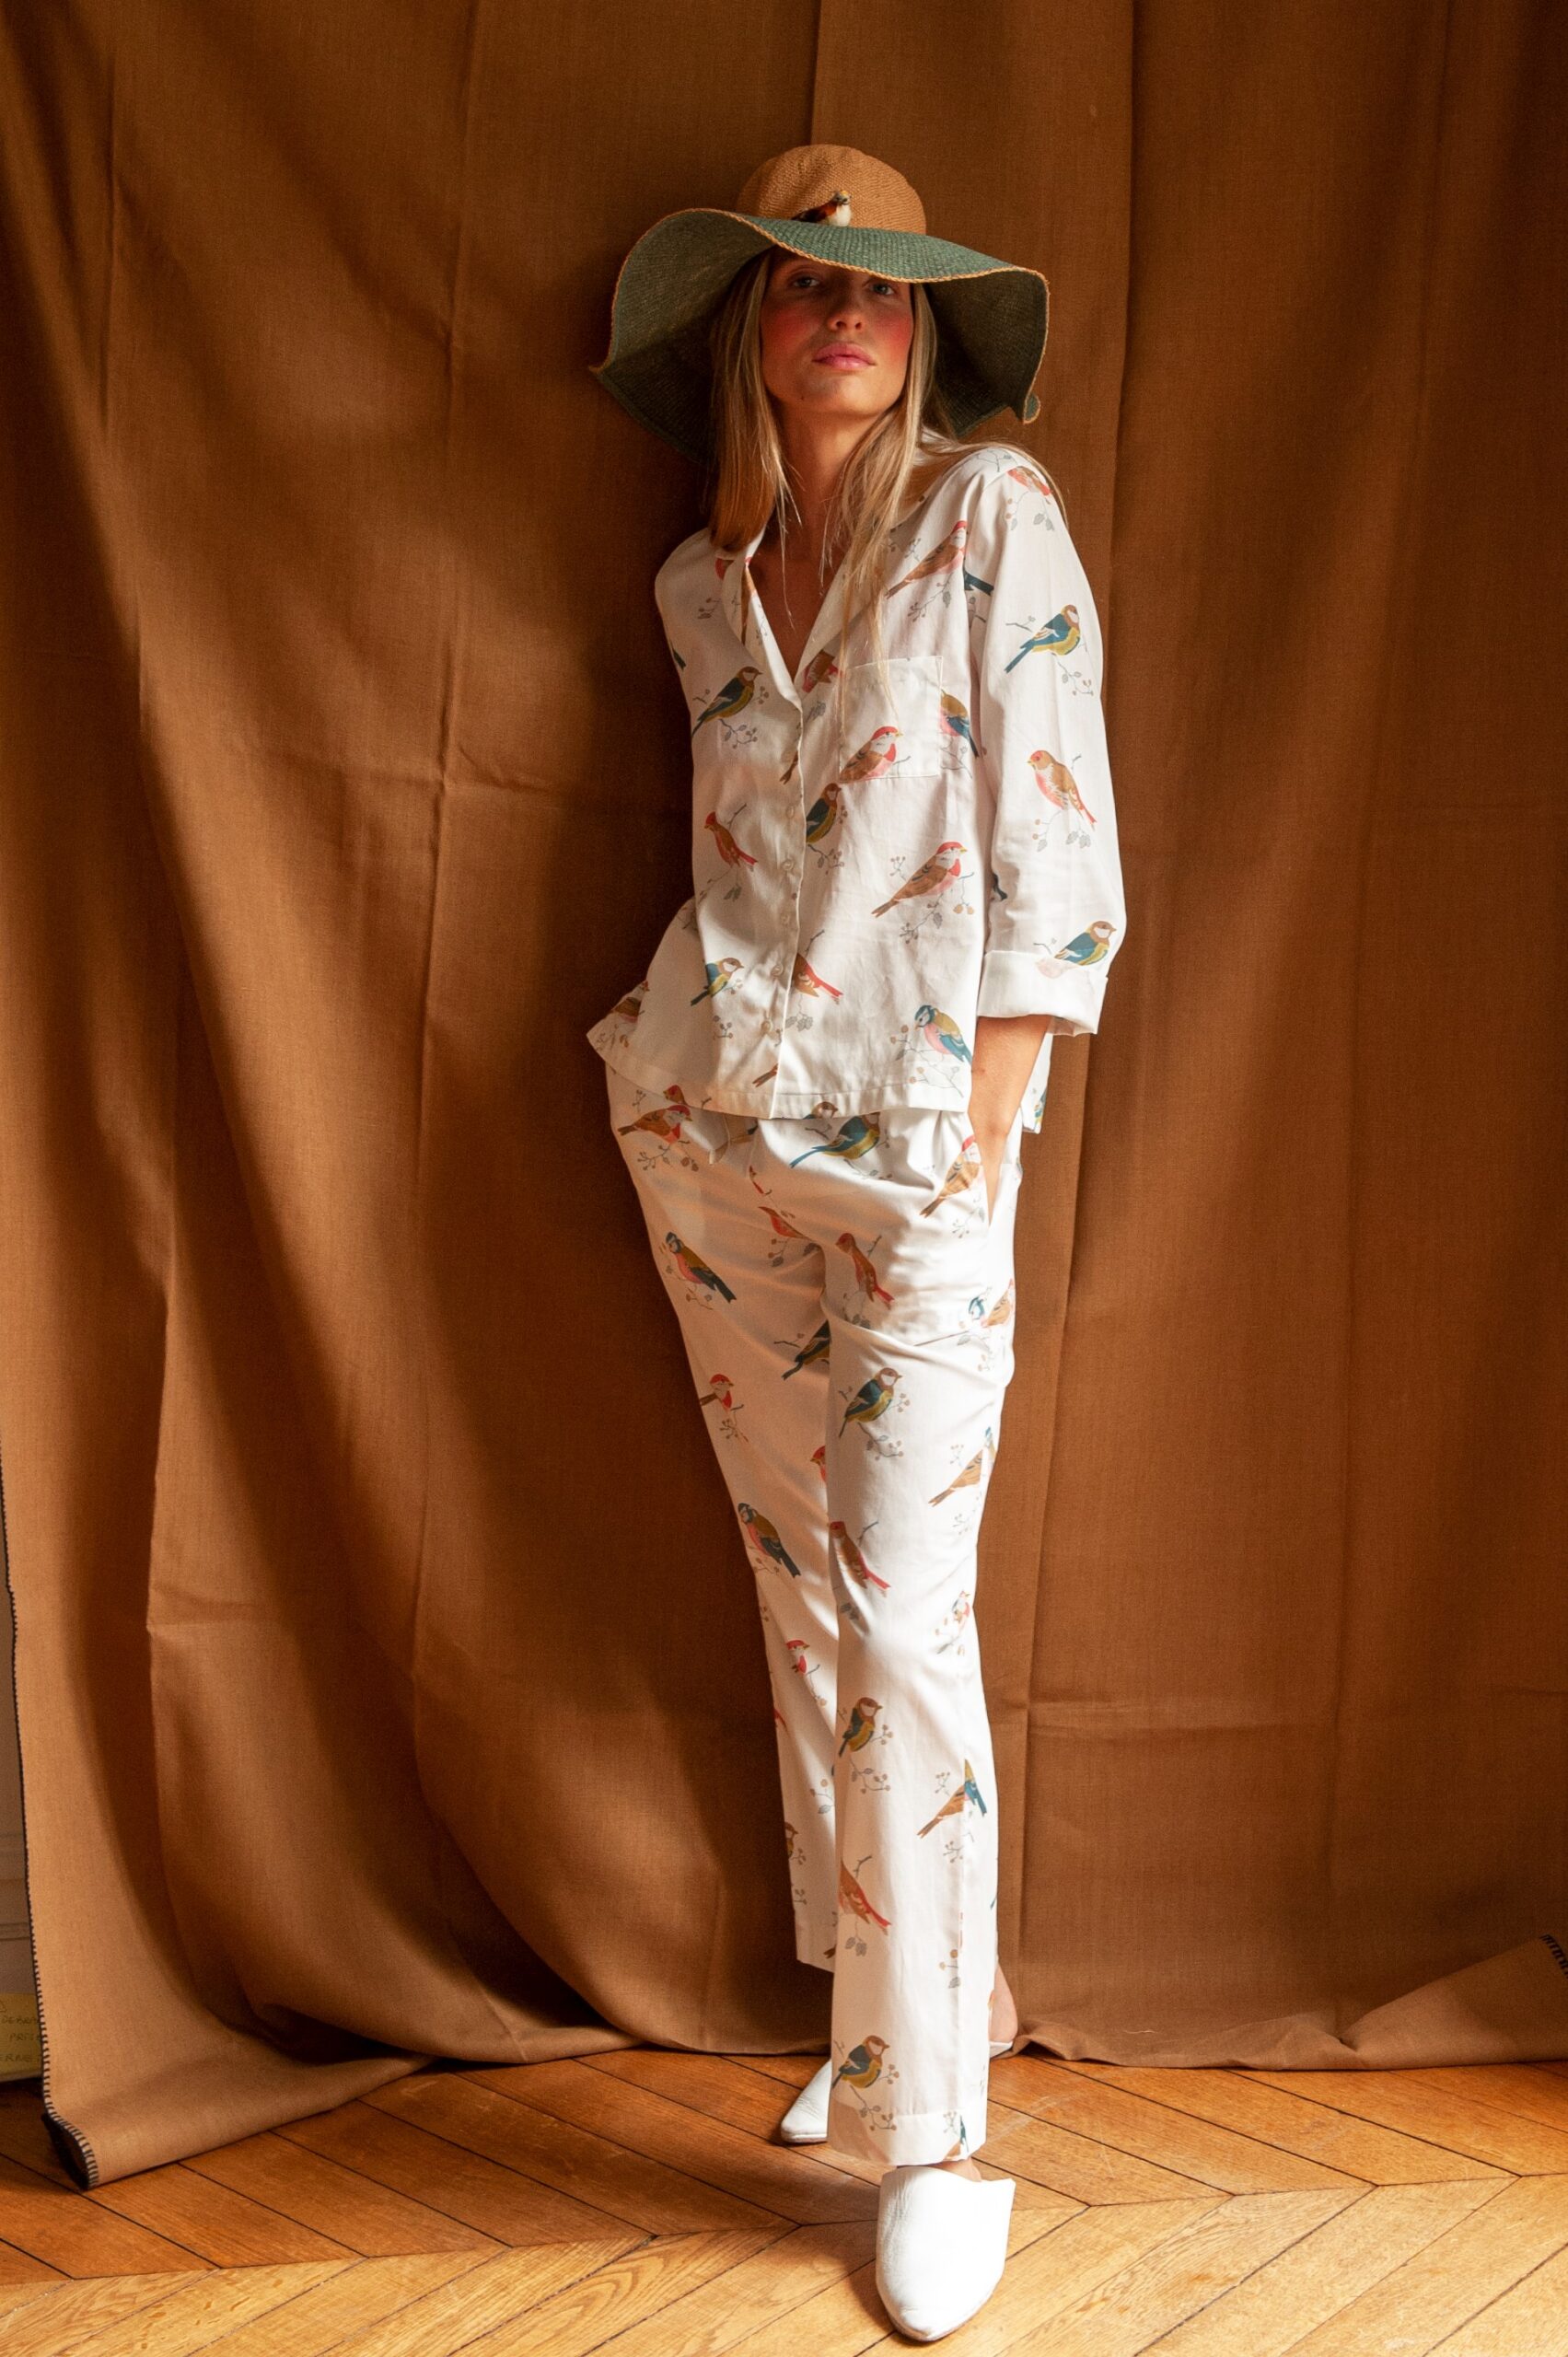 Le pyjama Juliette pyjama pour associer féminité et raffinement - Lalide  à Paris